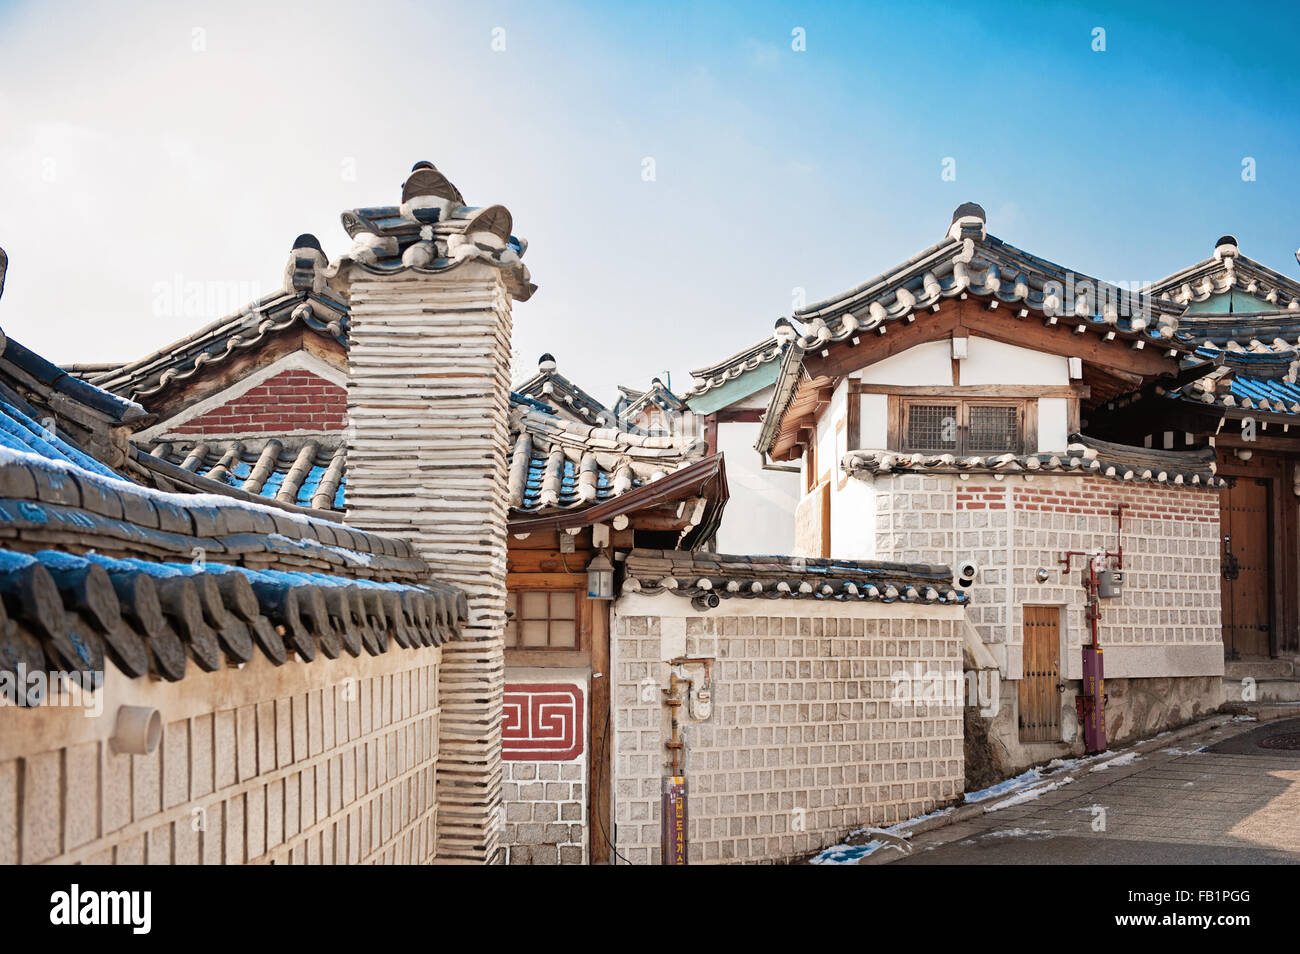 Immagini Creative di Bukchon Hanok Village - Seoul, Corea del Sud Foto Stock